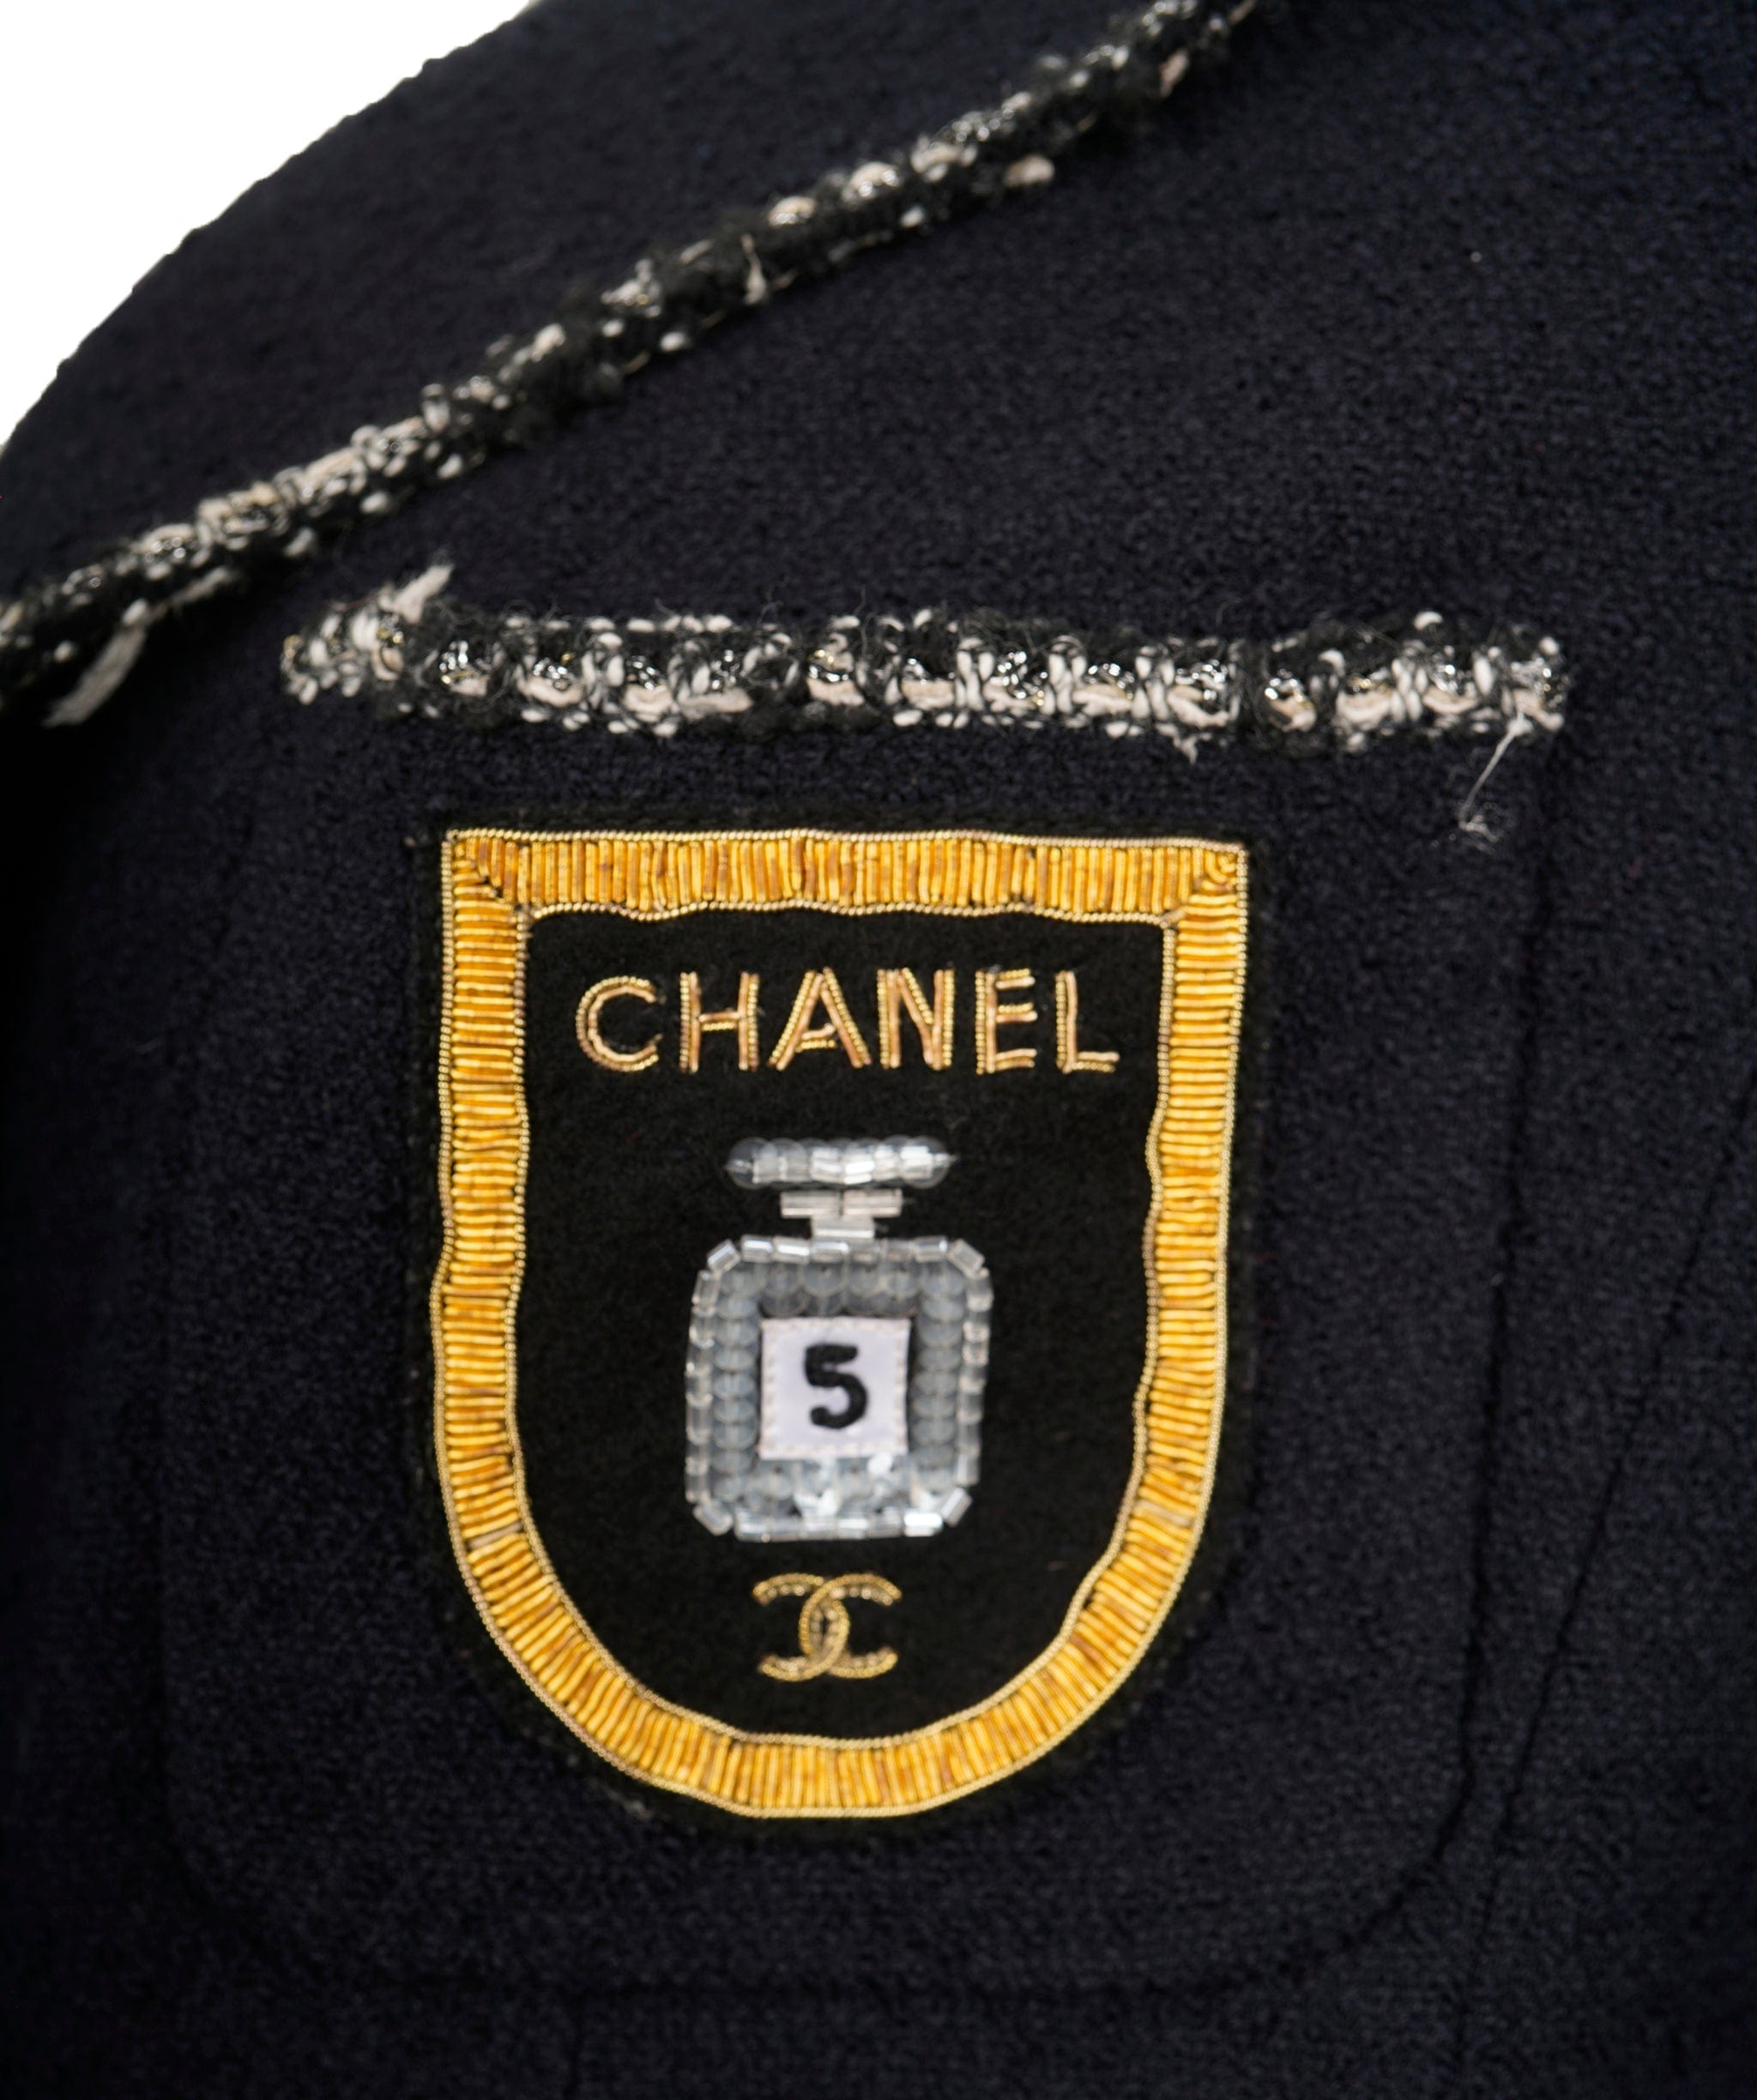 Chanel Chanel "Devil Wears Prada" navy jacket AVC1819